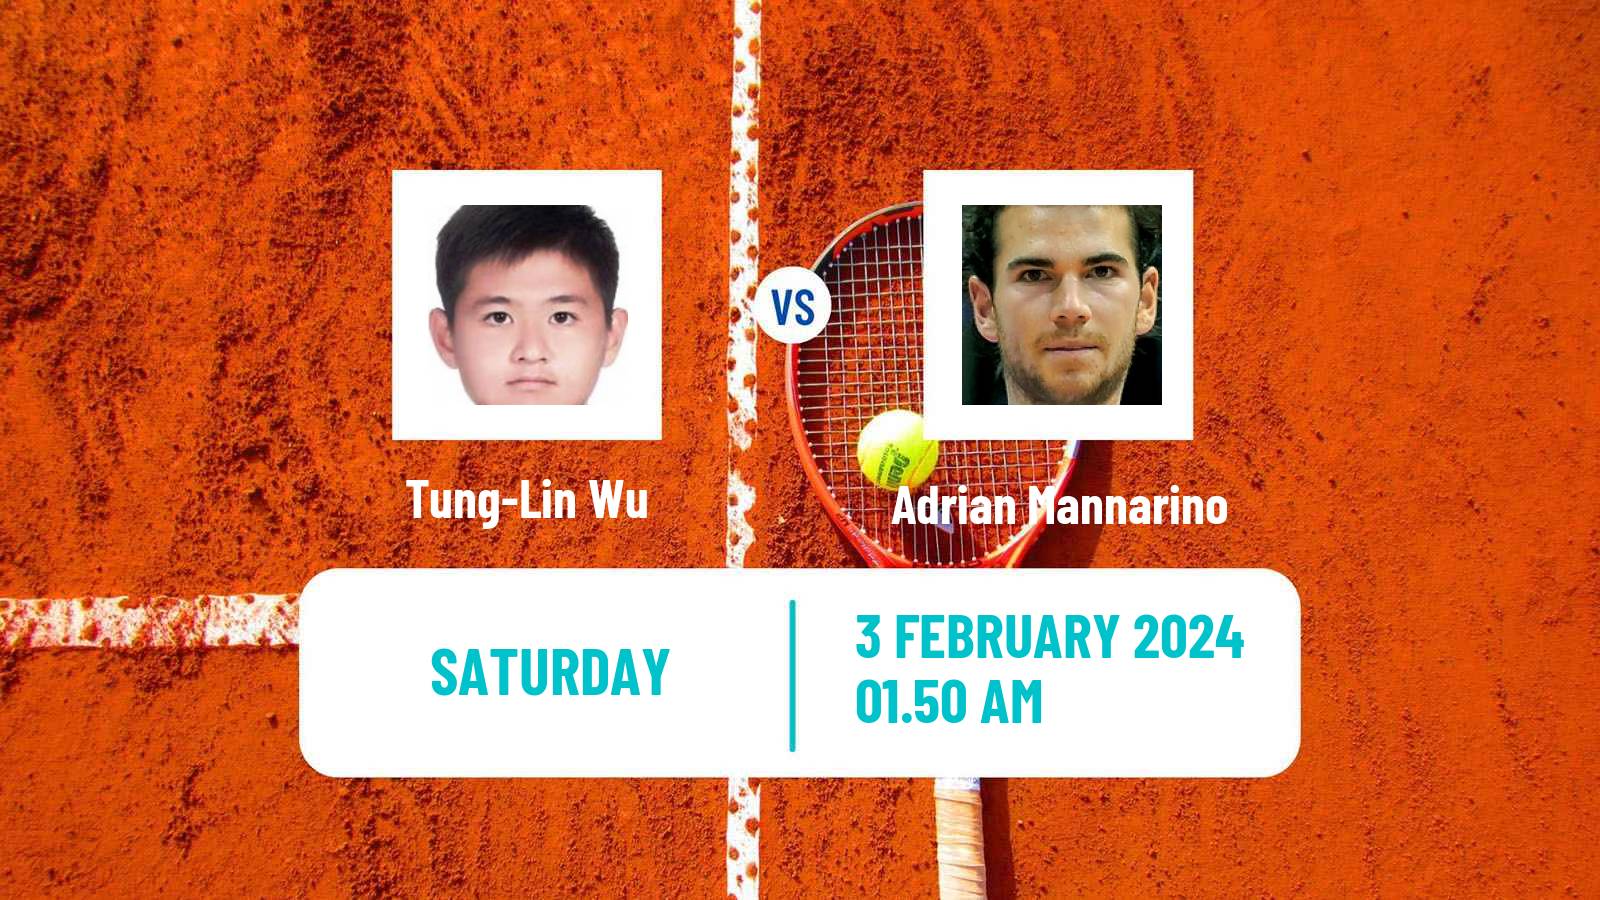 Tennis Davis Cup World Group Tung-Lin Wu - Adrian Mannarino